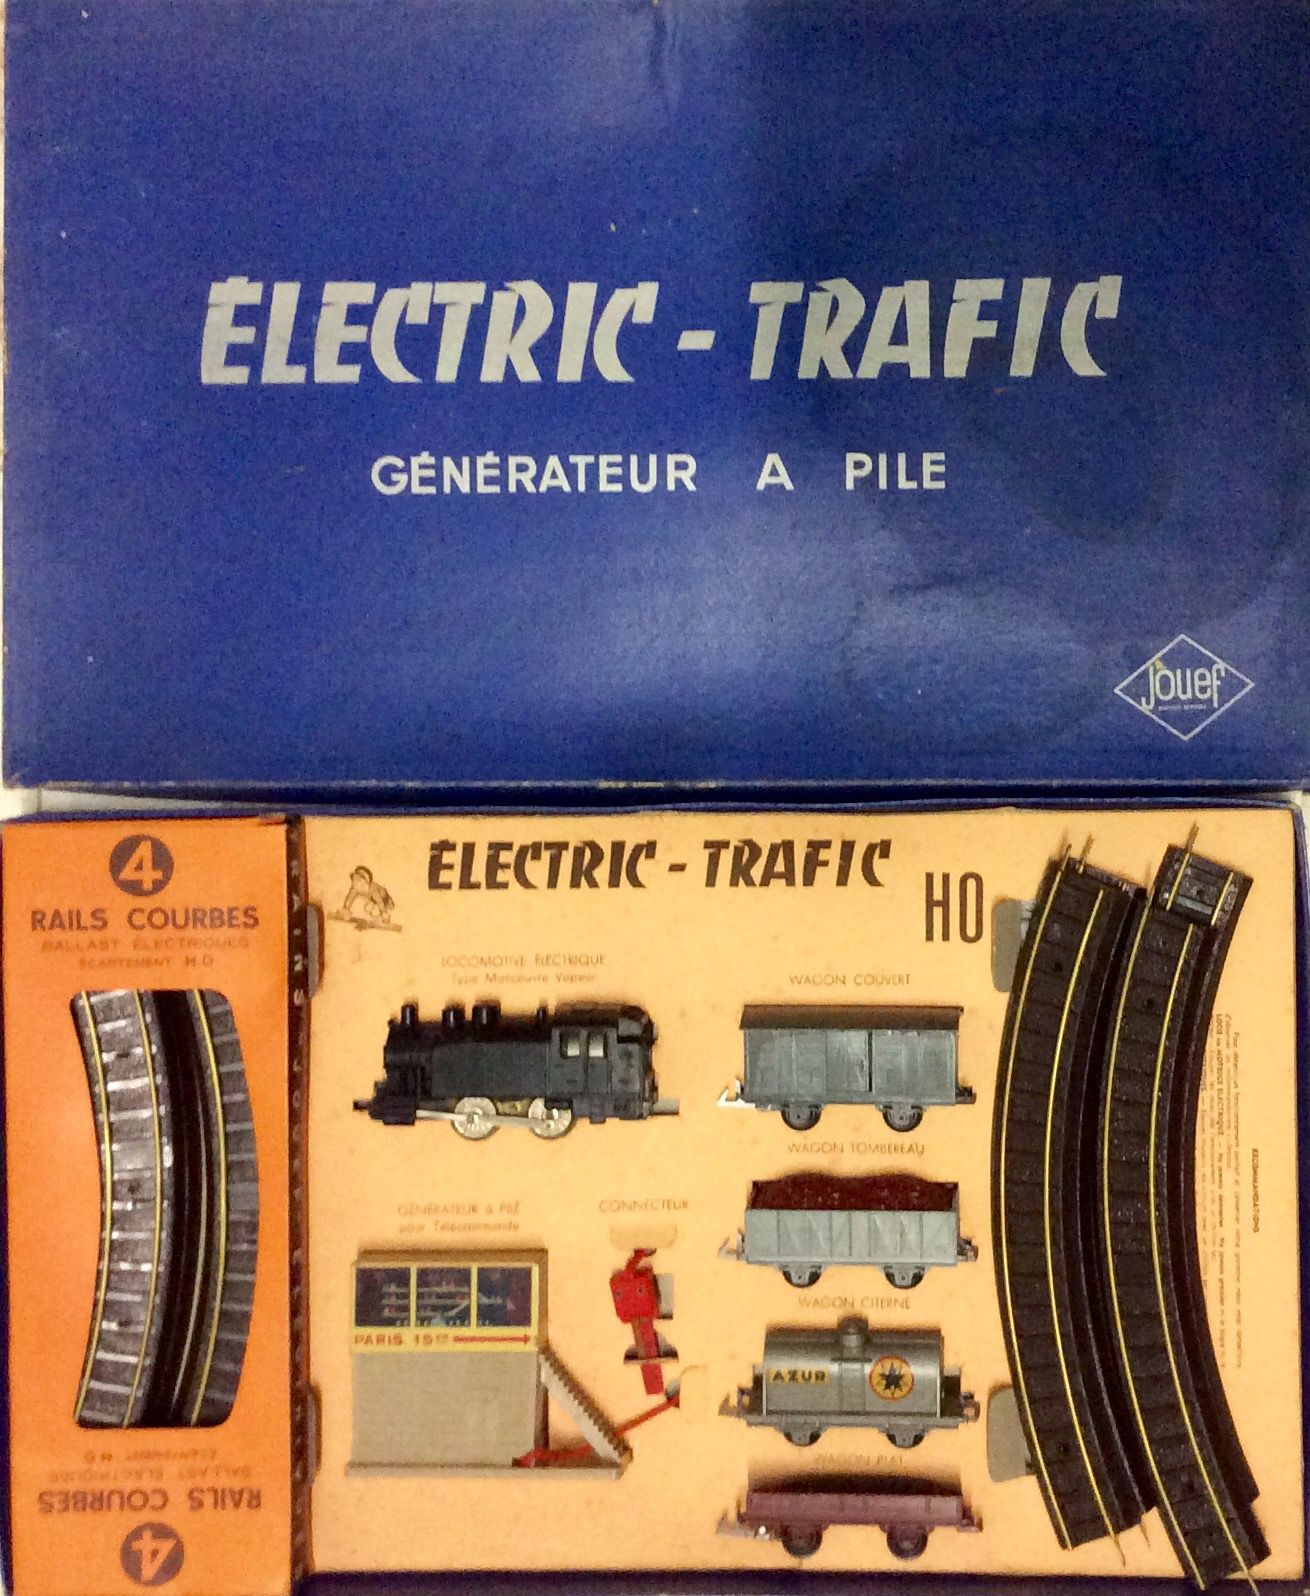 1957 REF 402 ELECTRIC TRAFIC générateur à piles - coffret train  jouef.over-blog.com